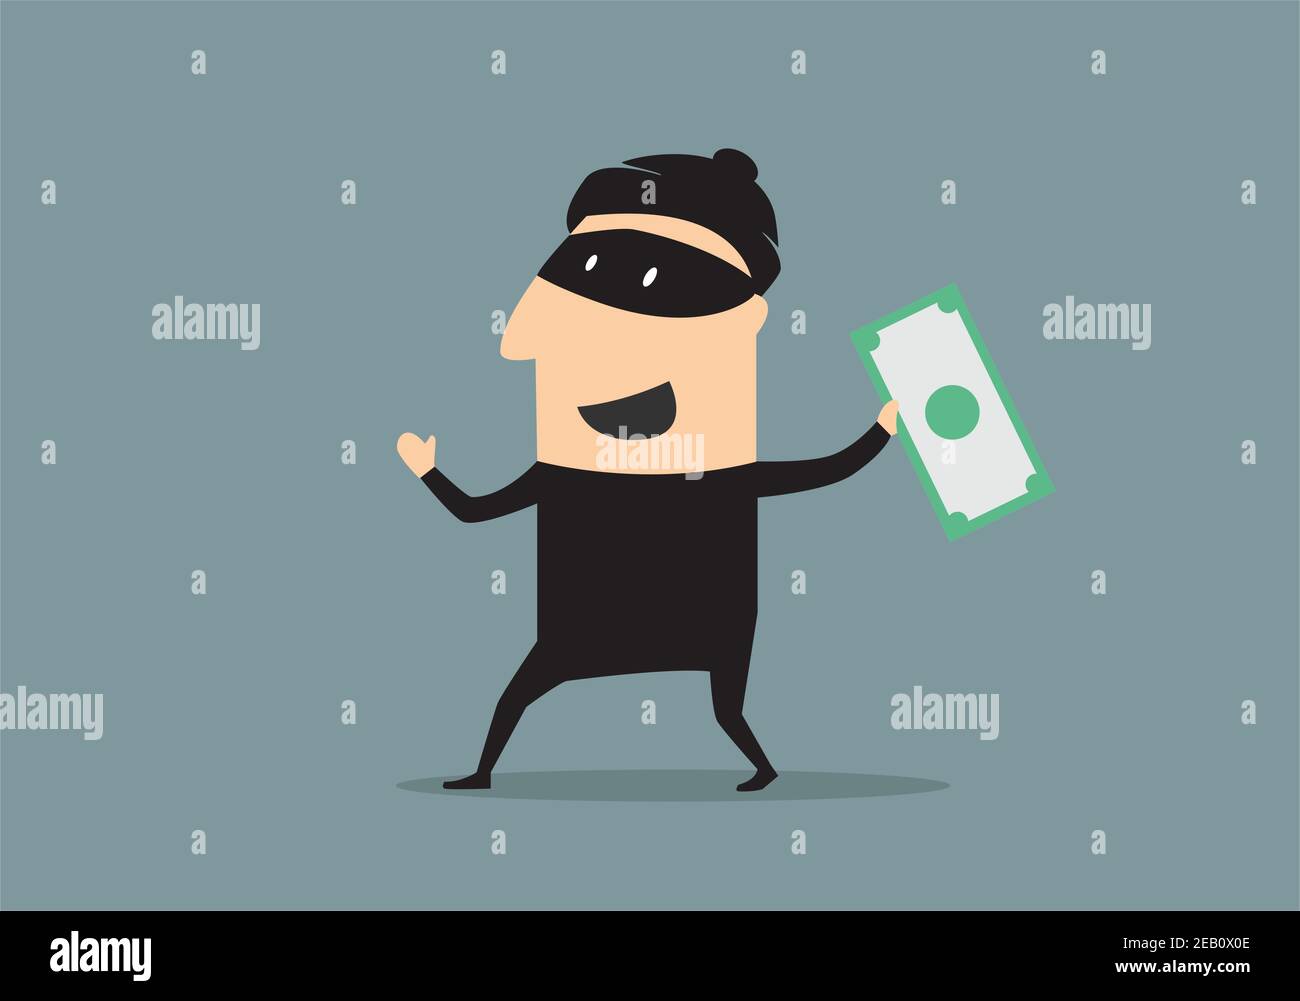 Un voleur de dessin animé souriant dans un masque noir et un costume dedans style plat tenant un billet de banque volé Illustration de Vecteur